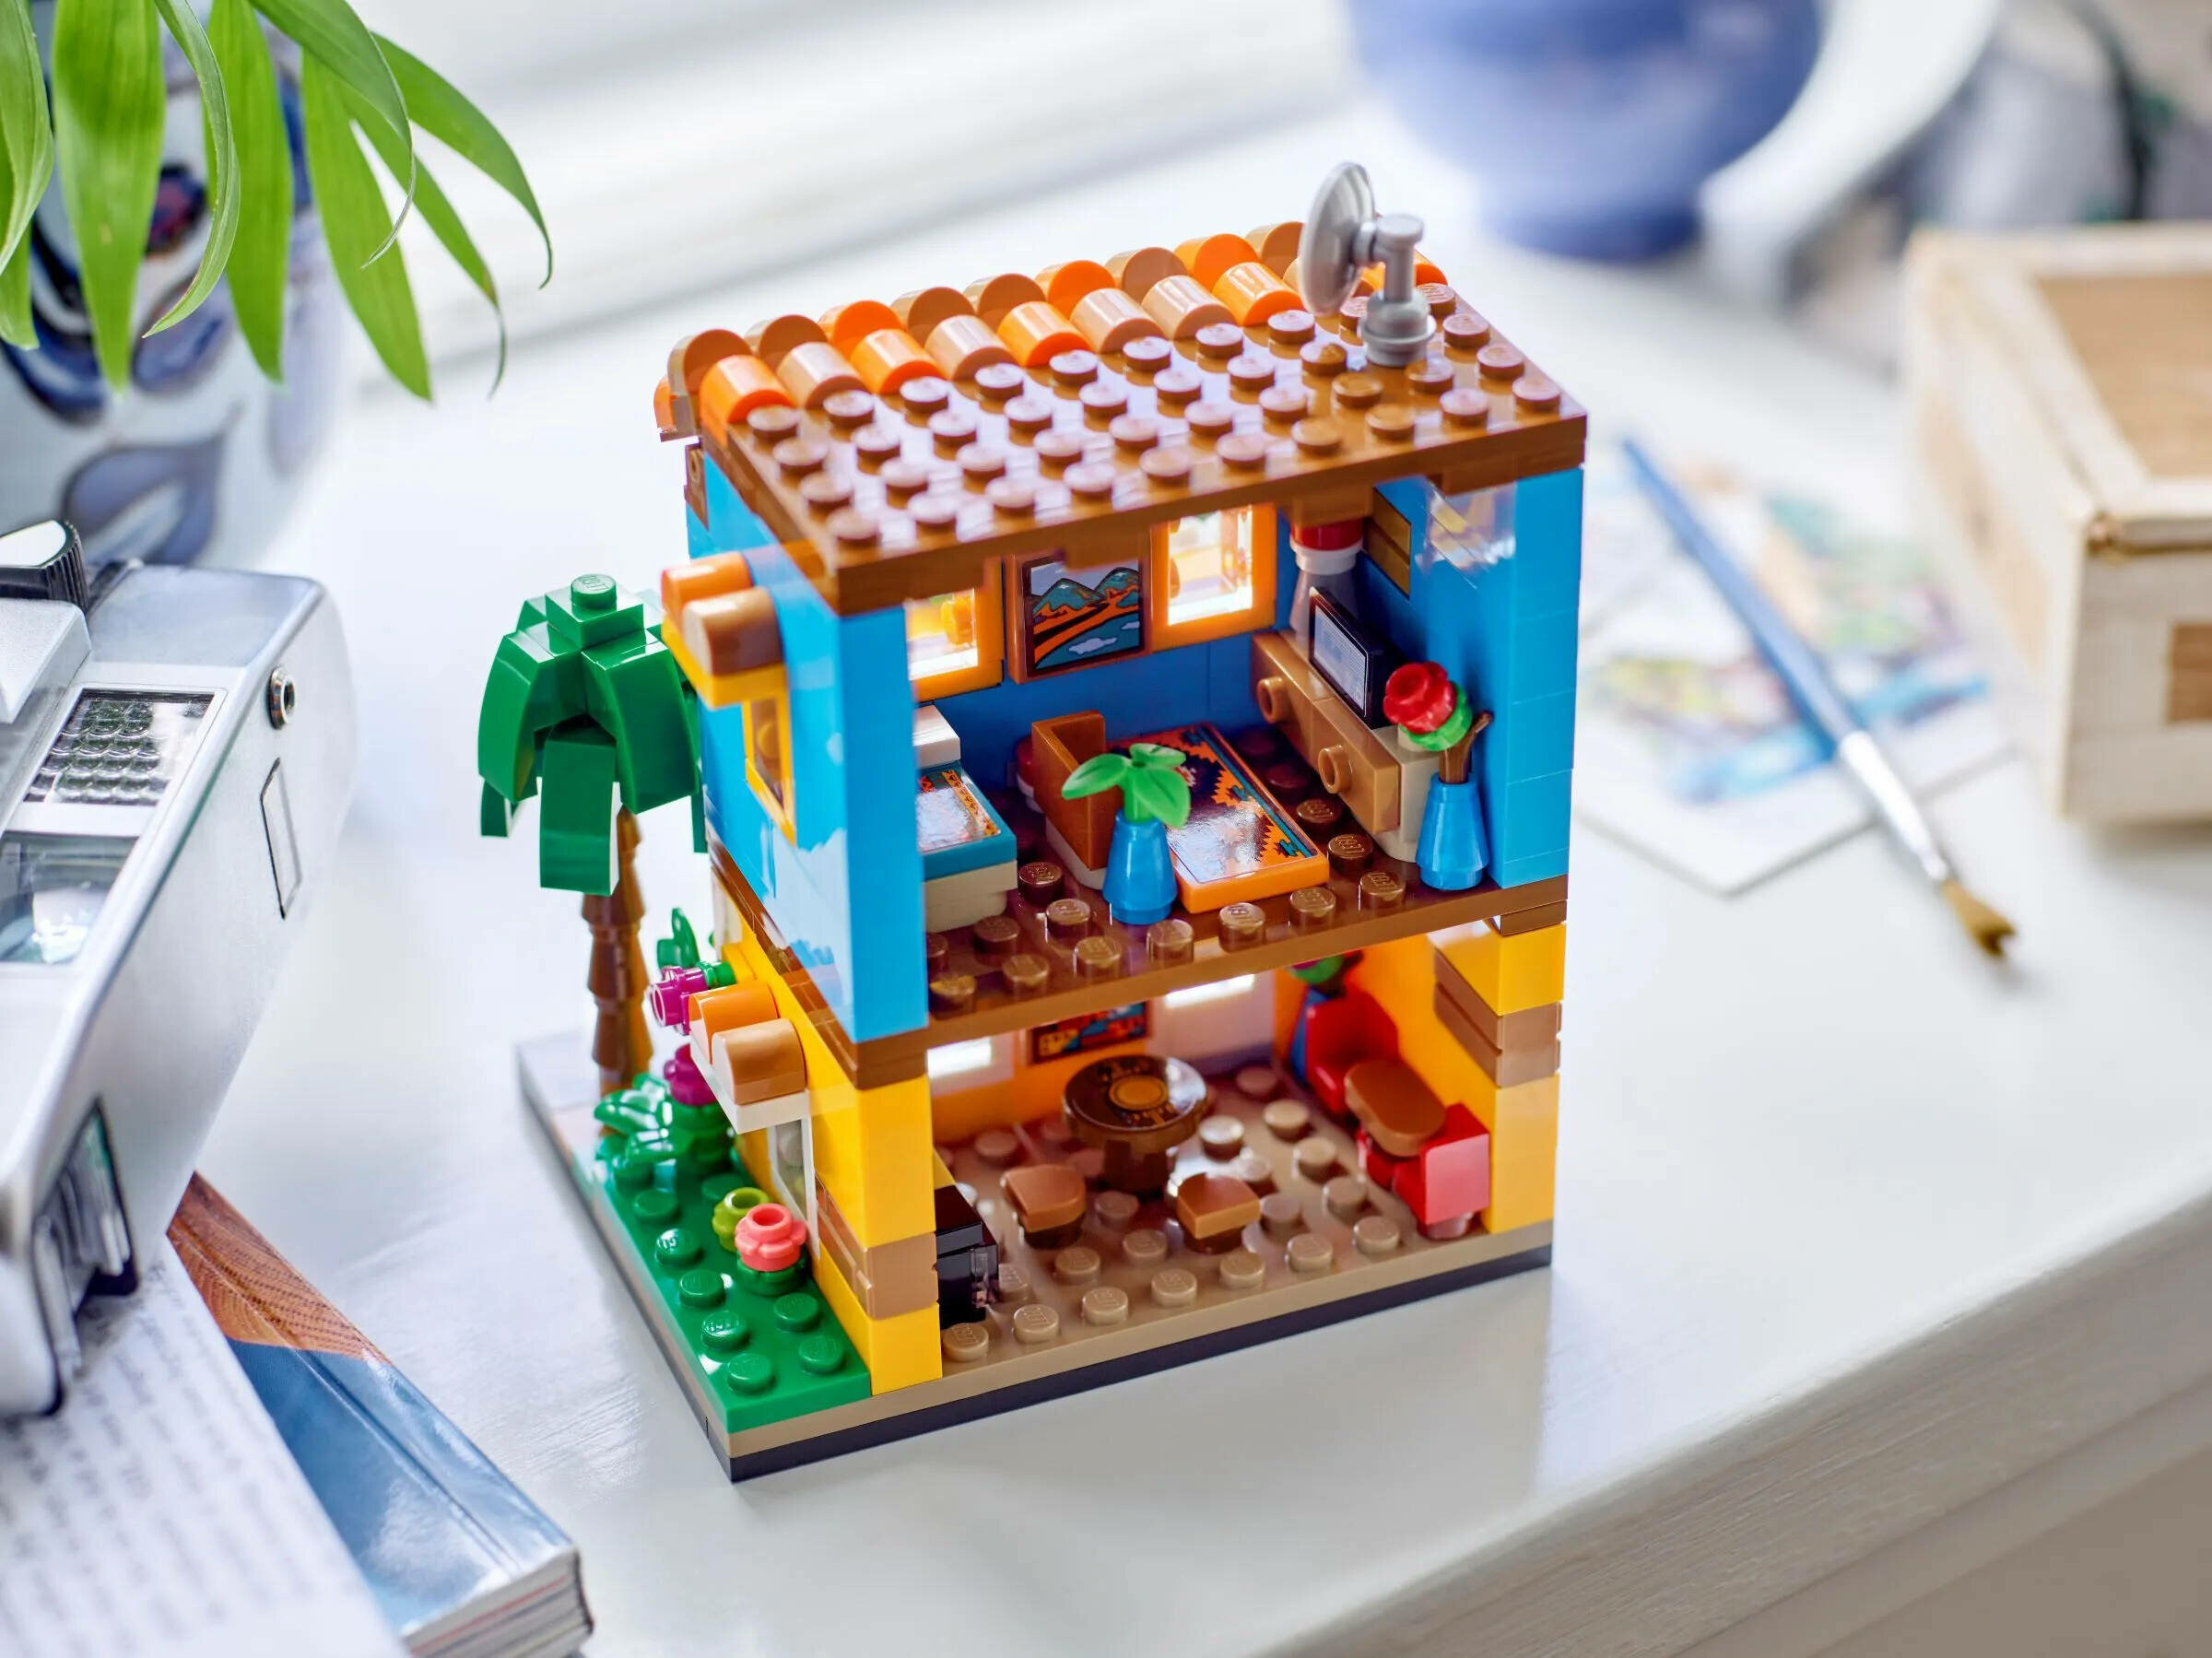 LEGO Коллекционные наборы 40583 Дома мира 1